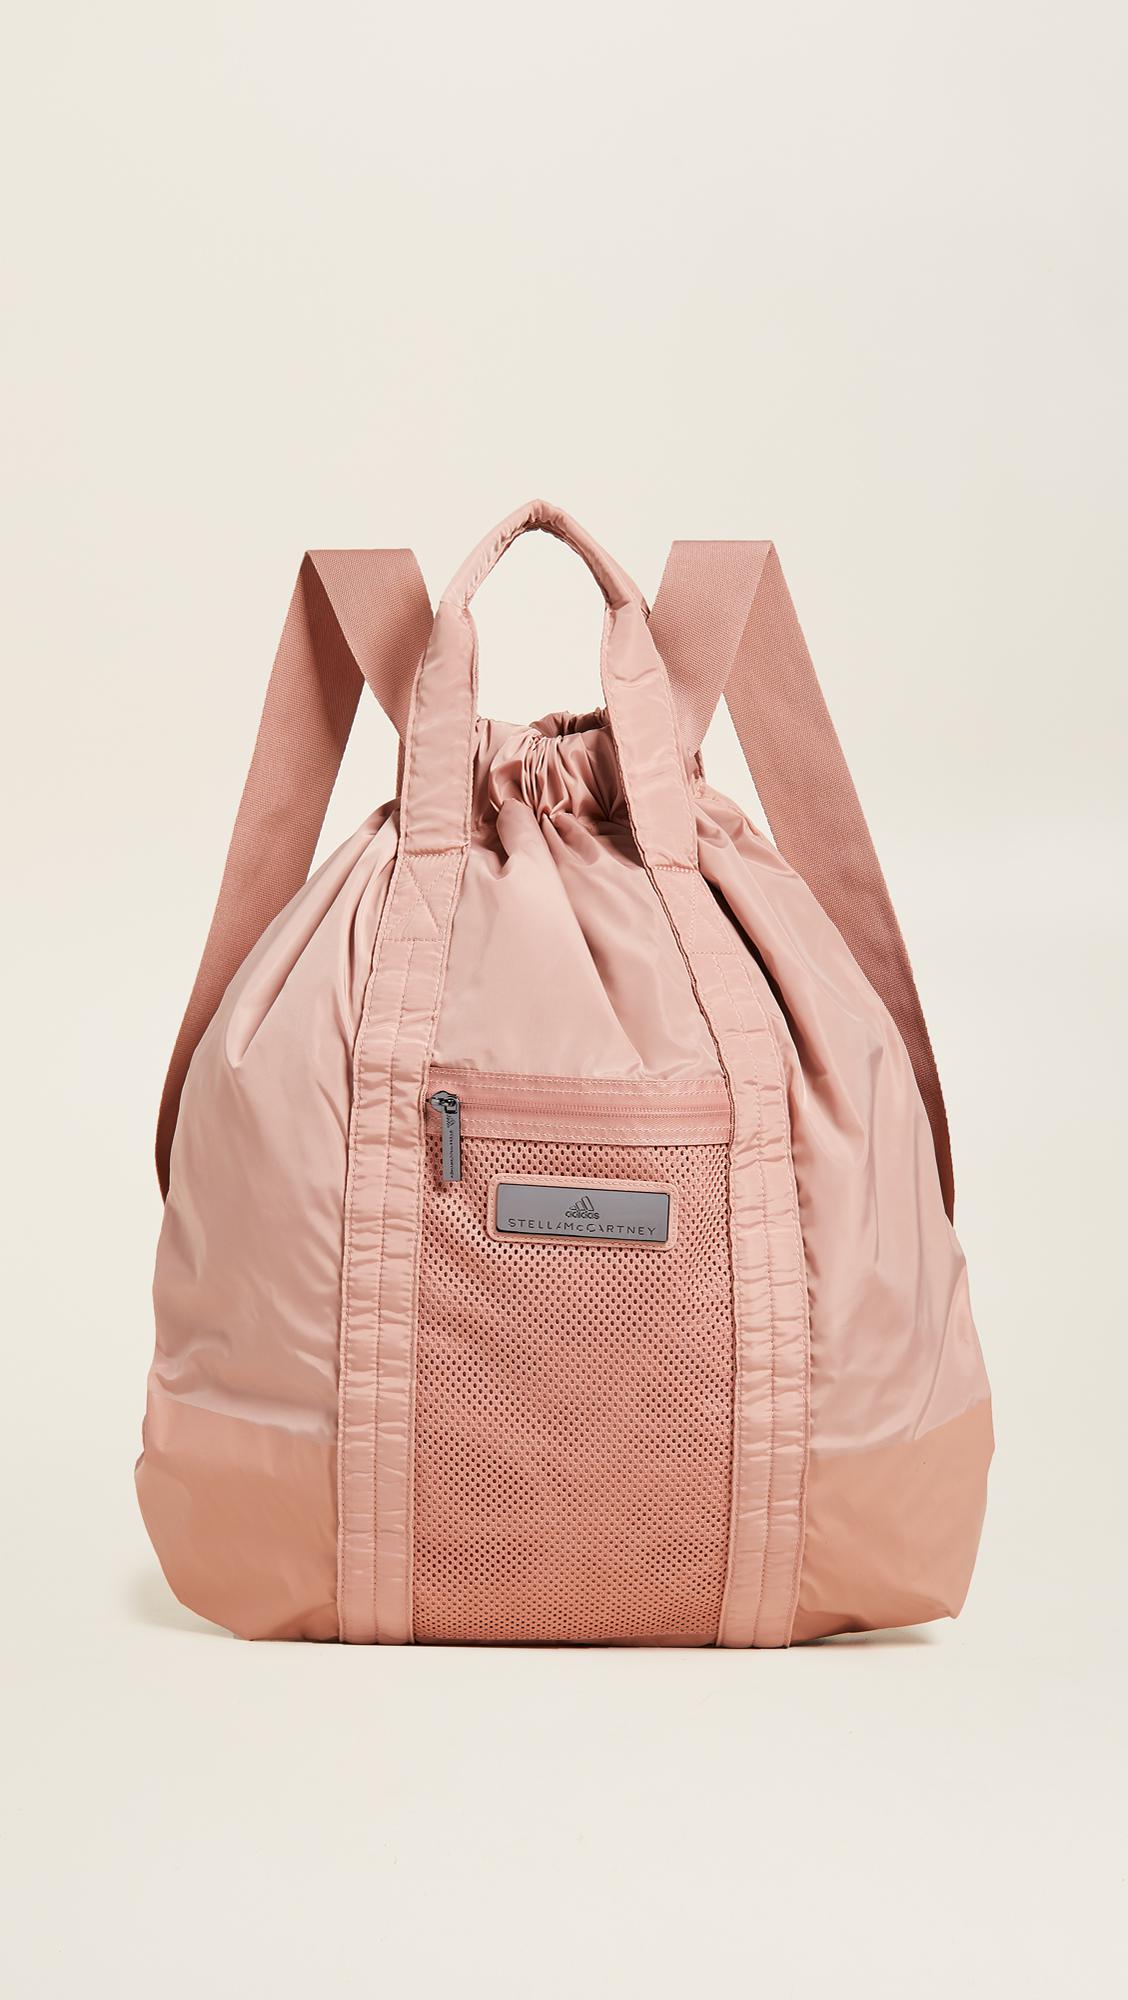 adidas By Stella McCartney Gym Sack Backpack in Cinnamon Blush (Pink) - Lyst